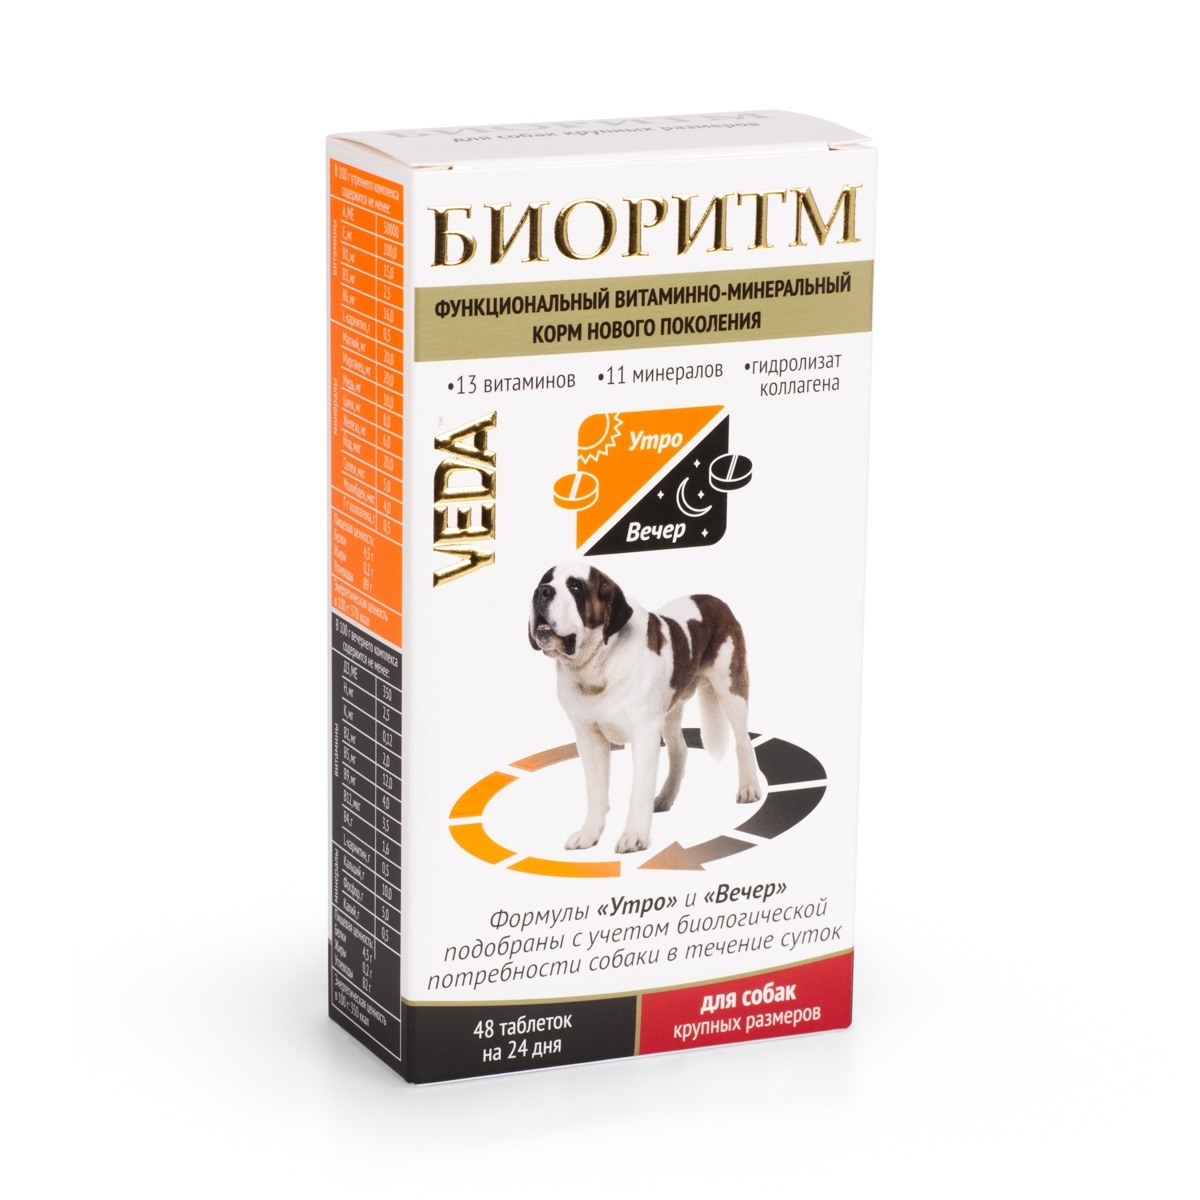 Веда биоритм витамины для собак крупных пород (20 г) Веда биоритм витамины для собак крупных пород (20 г) - фото 1